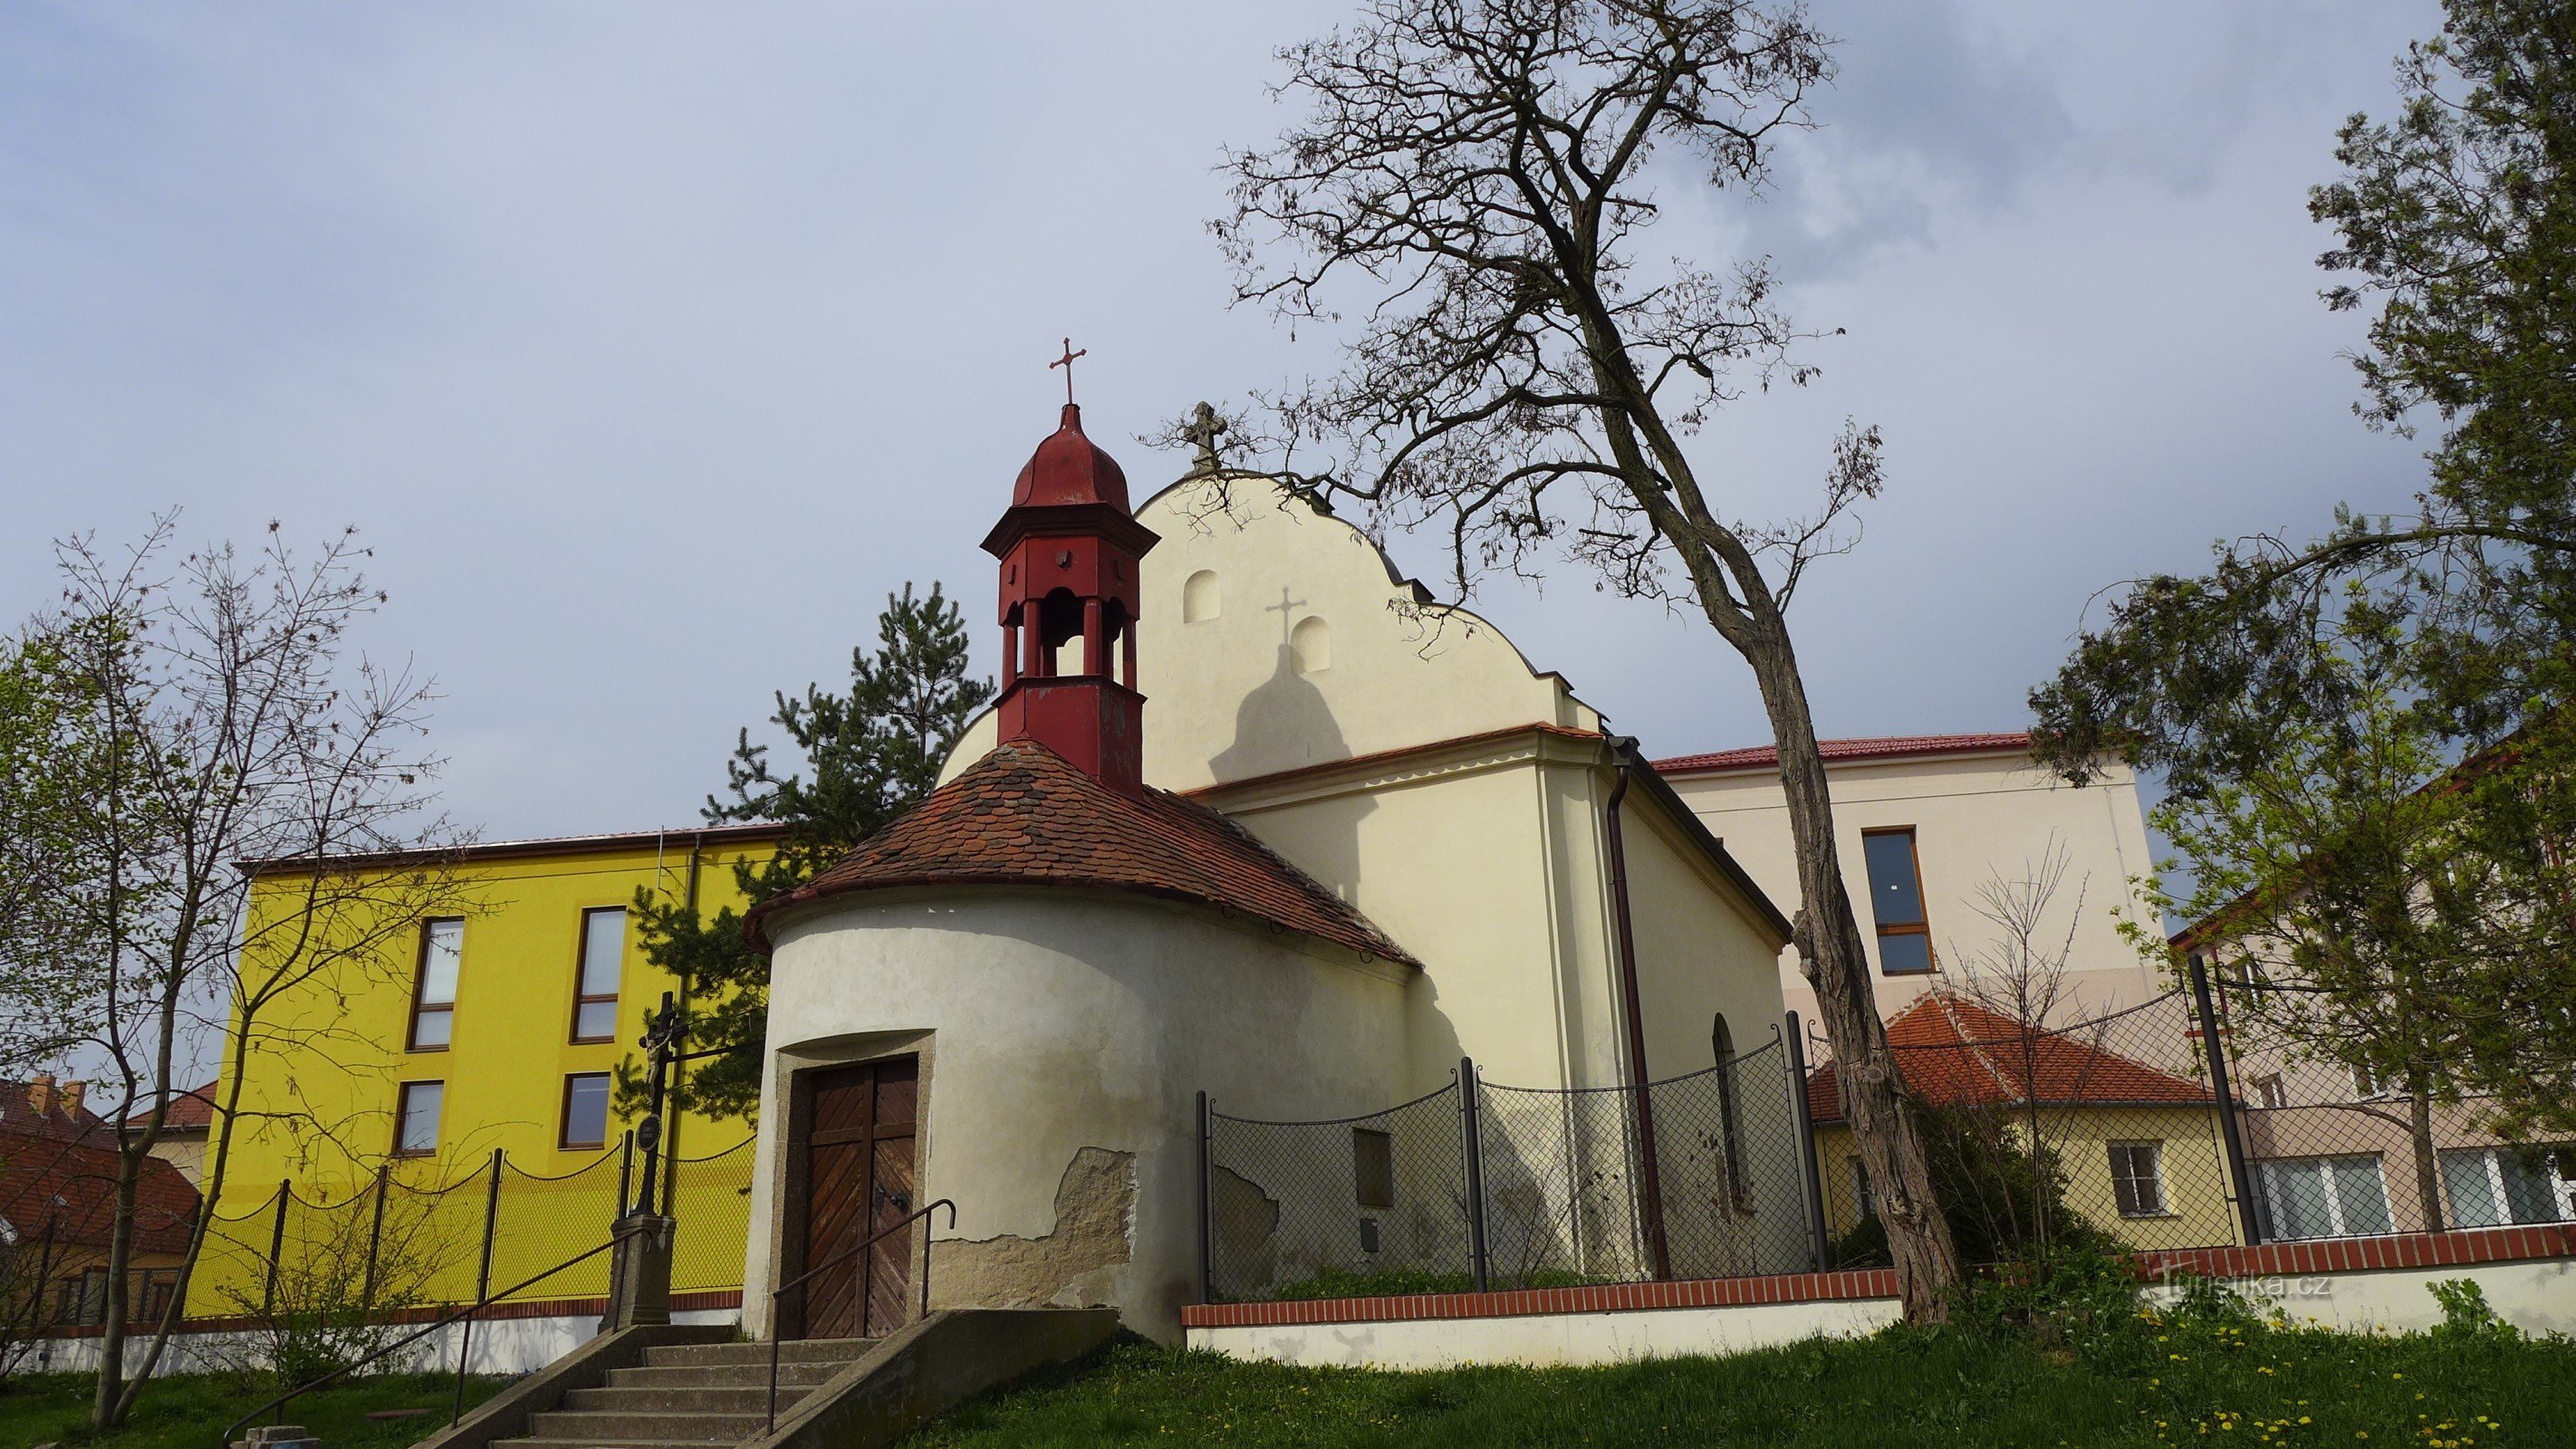 Jaroměřice nad Rokytnou - chapel of St. Joseph 1